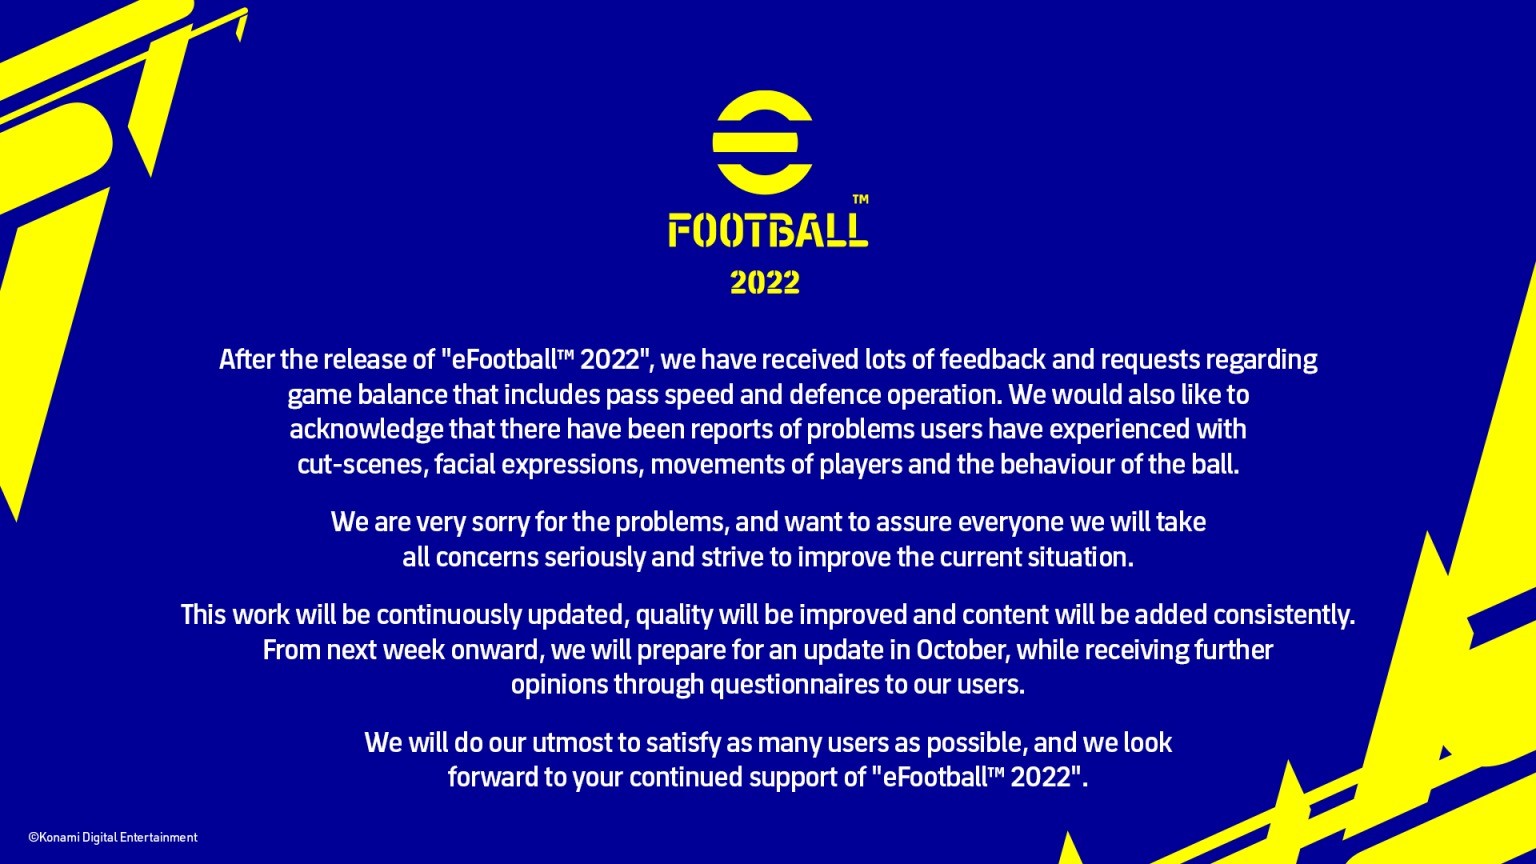 科乐美对《eFootball 2022》糟糕表现发表官方声明